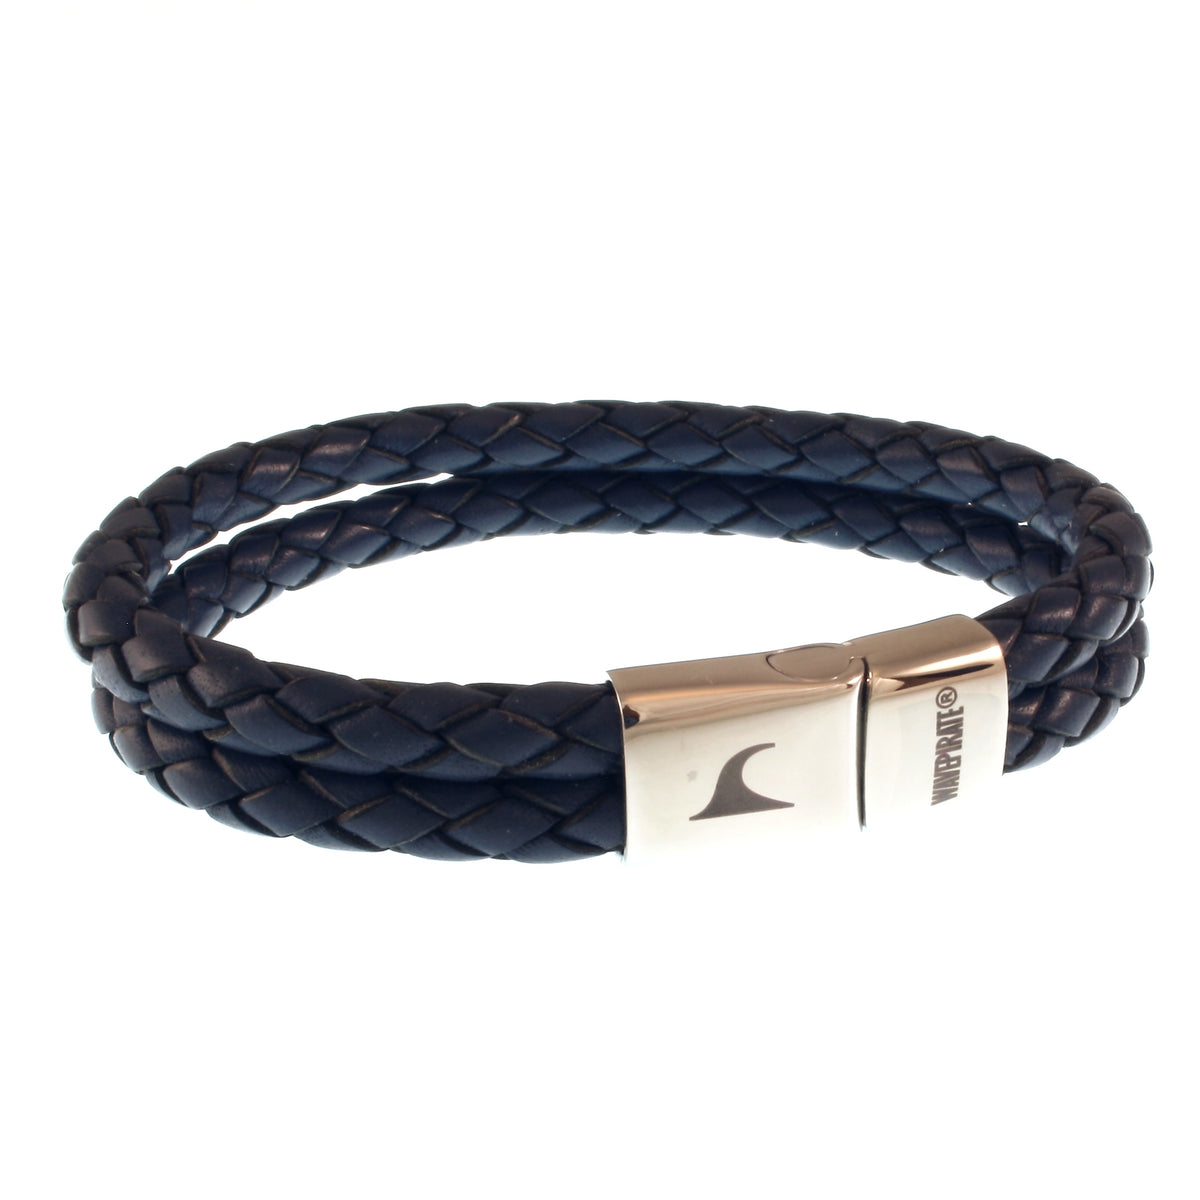 Herren-Leder-Armband-Tarifa-blau-geflochten-Edelstahlverschluss-vorn-wavepirate-shop-f